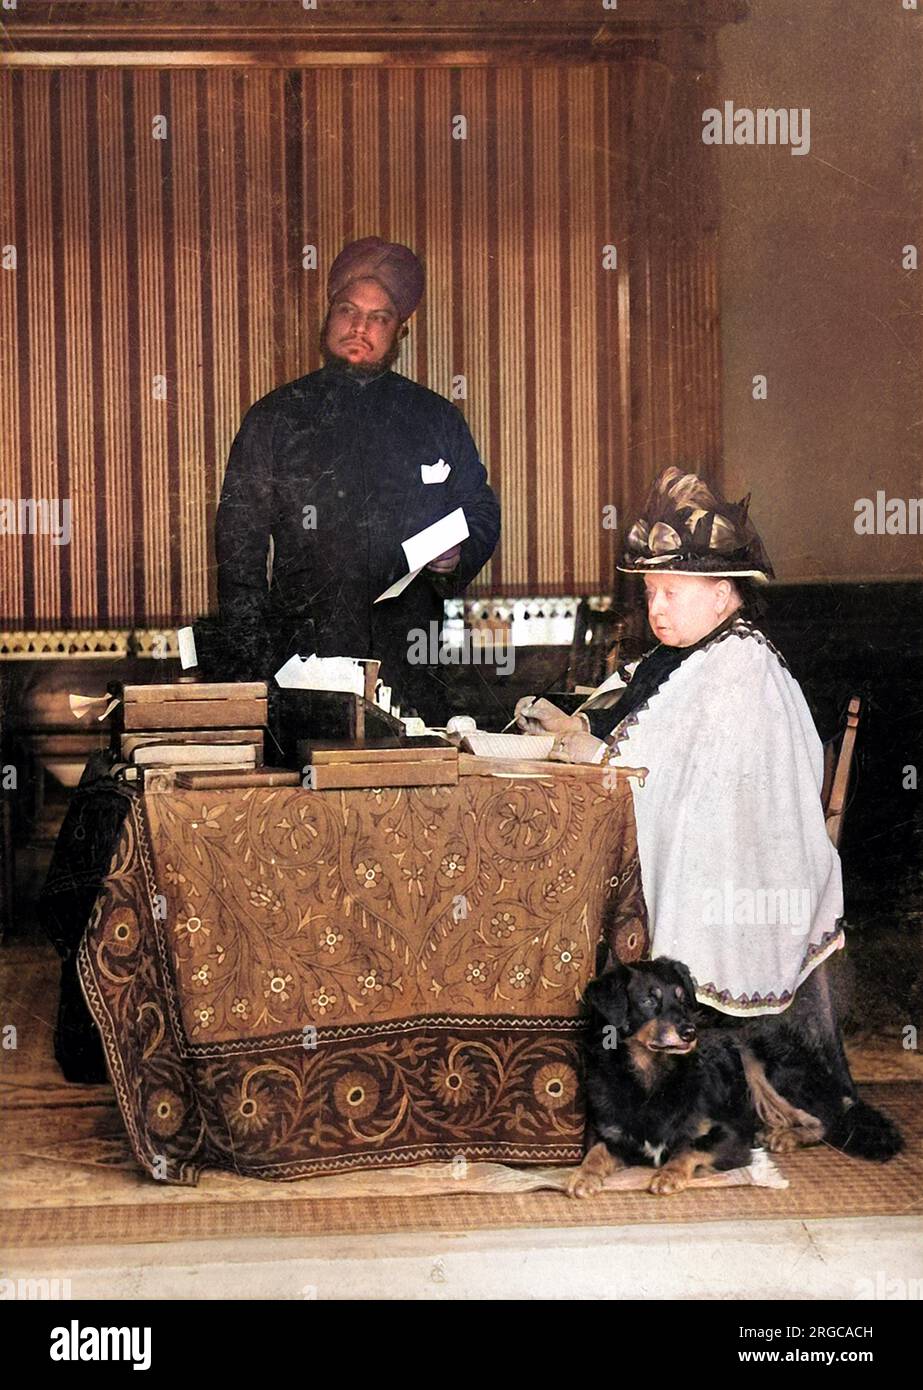 Königin Victoria (1819-1901) aus Großbritannien und Irland und Kaiserin von Indien, abgebildet an ihrem Schreibtisch. Ihr indischer Diener Abdul Karim, auch bekannt als "Munshi", steht im Hintergrund. Stockfoto